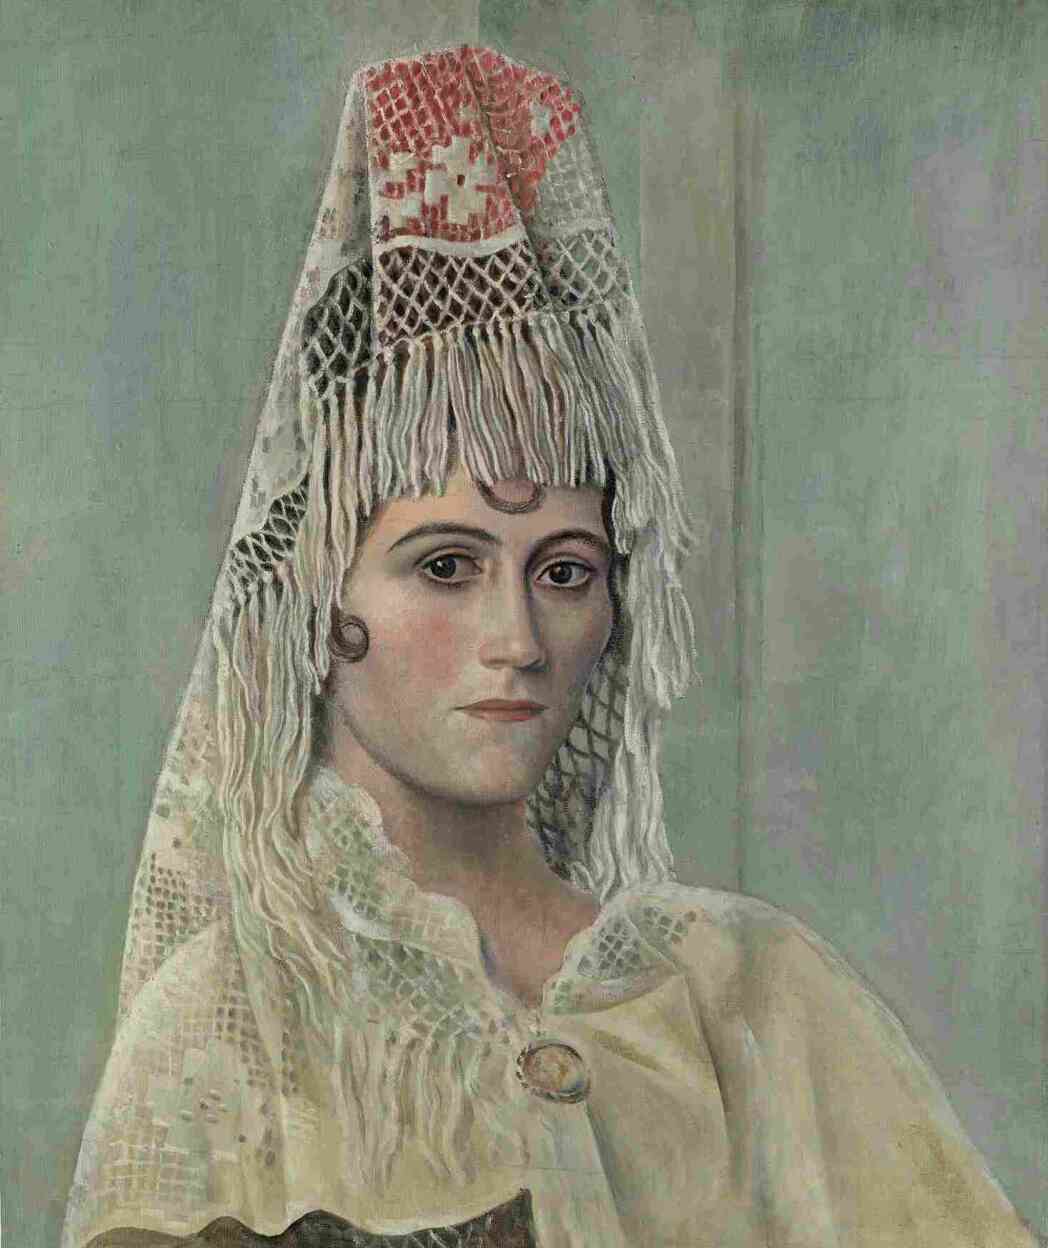 « “Olga à la mantille” est l’un des tout premiers portraits d’Olga, que Picasso a rencontrée lors de son séjour à Rome en 1917. L’artiste la dépeint avec naturalisme et distance, en la dotant significativement d’une coiffe catalane, accessoire typique du costume traditionnel espagnol, improvisé à partir d’un napperon de guéridon. »